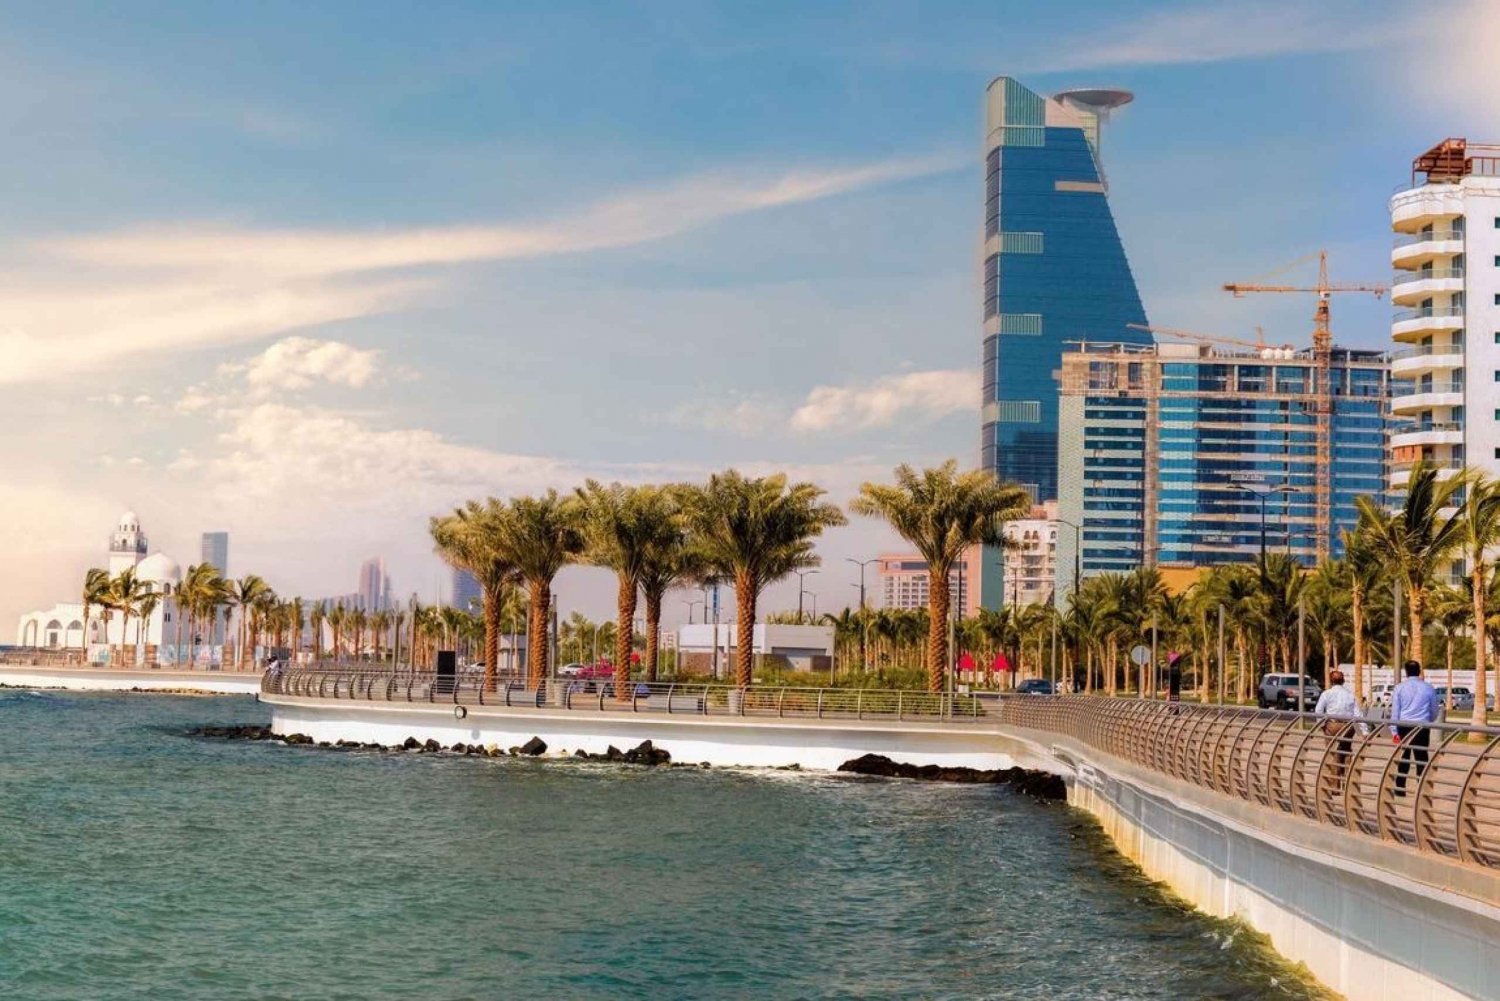 Jeddah: Passeio pelos destaques históricos da cidade velha